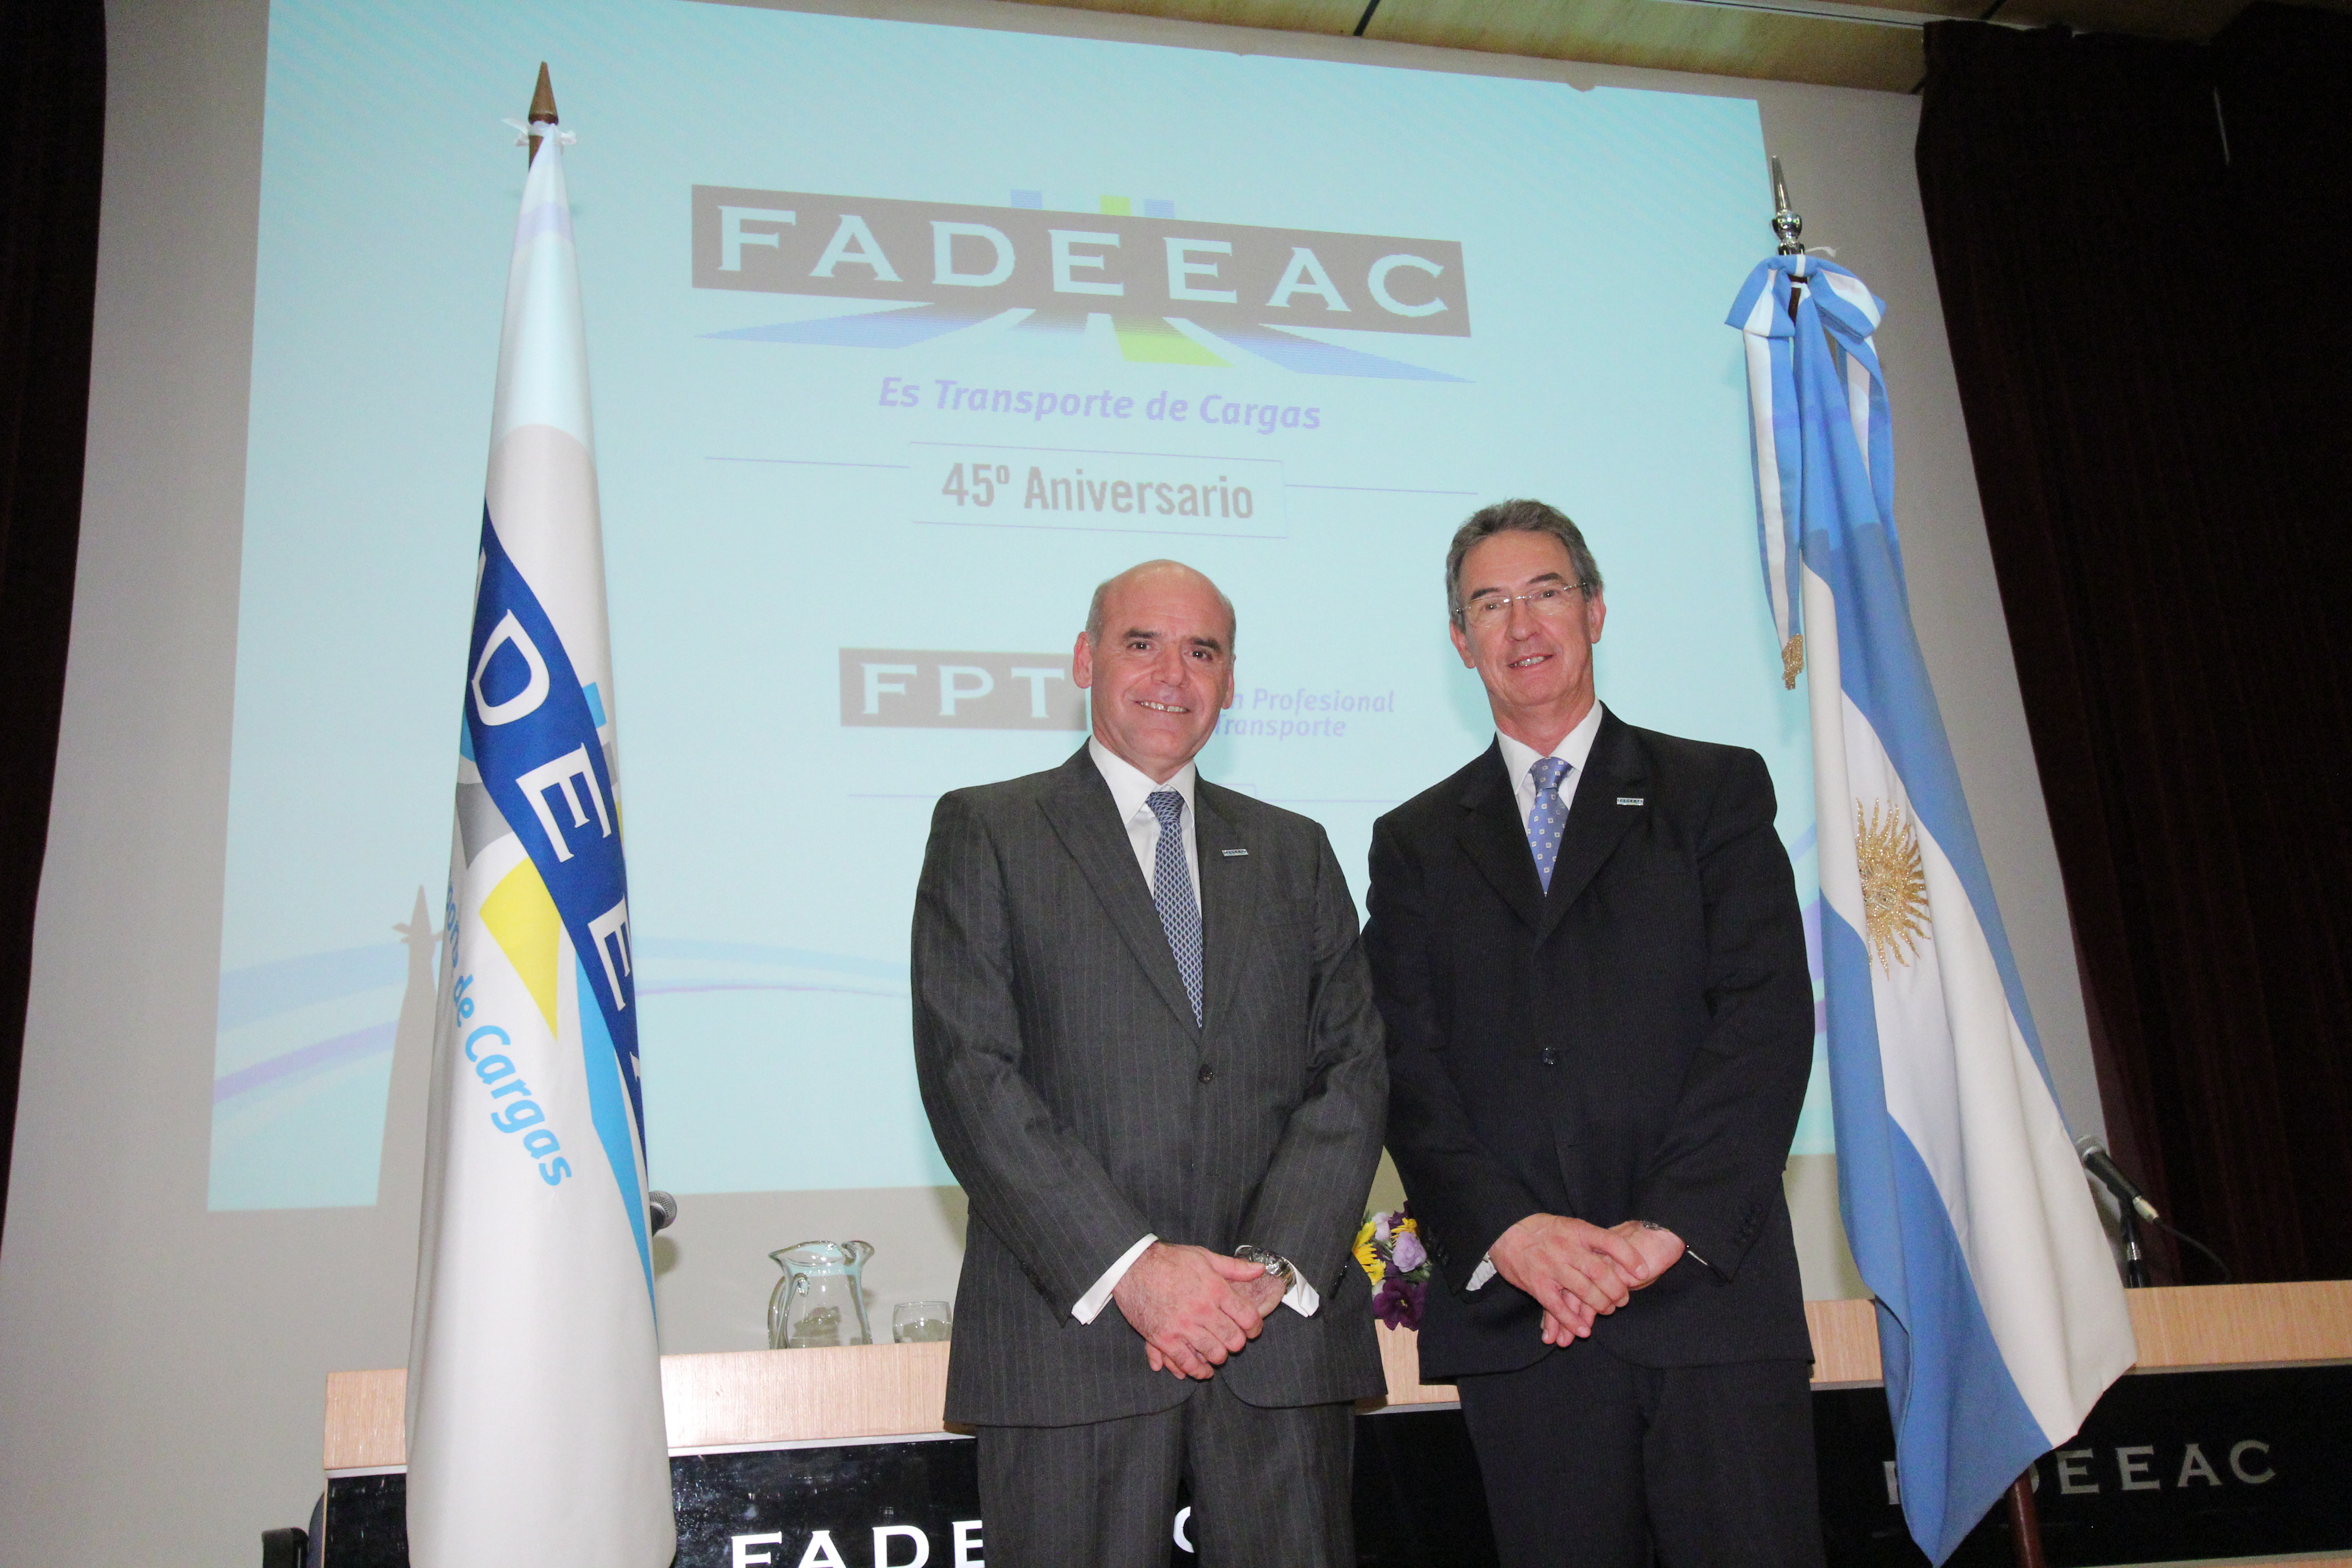 Daniel Indart es el nuevo Presidente de FADEEAC